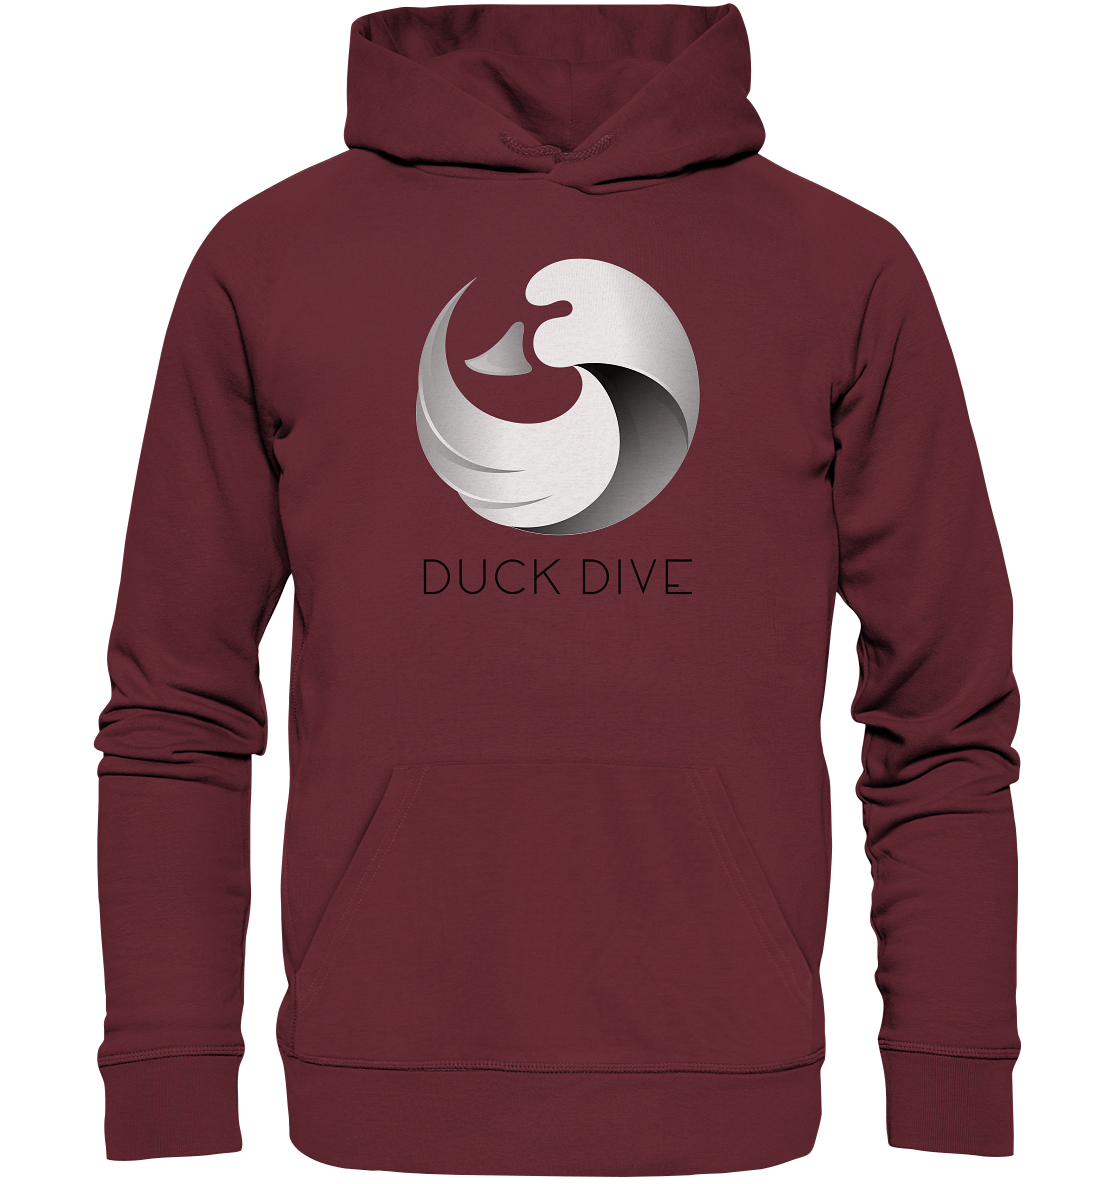 Hoodie - Duck &amp; Wave Silver - Organic Hoodie - Duck Dive Clothing